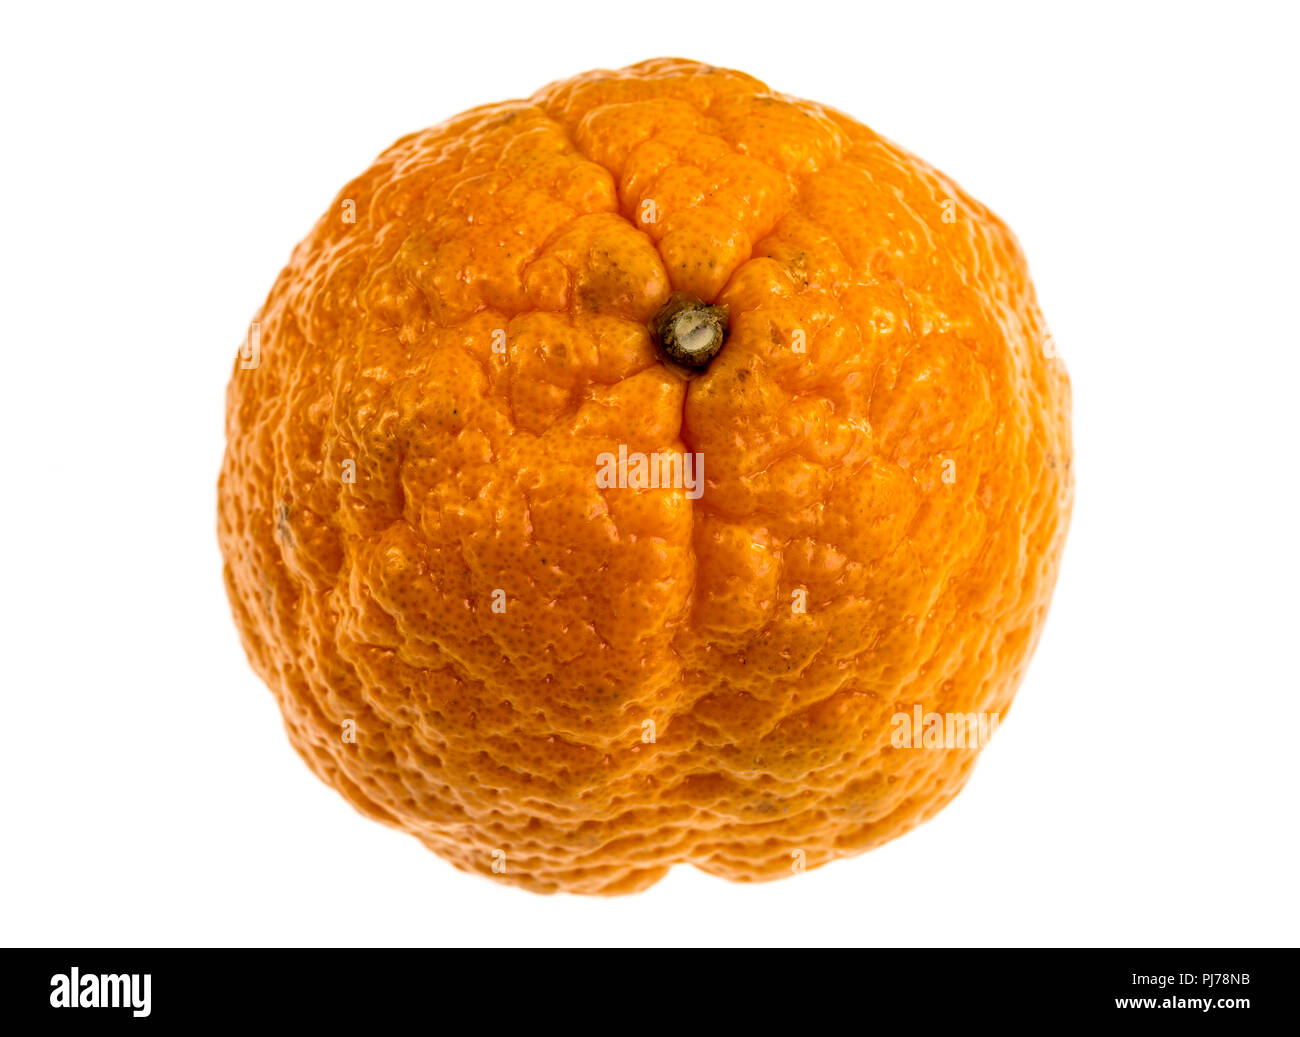 Gold Nugget ist ein Mandarin Vielzahl, mittelgroß, Oblaten in Form mit einem Holprigen orange Rinde. Das Fleisch ist hell orange, fein strukturiertem, und kernlose. Stockfoto